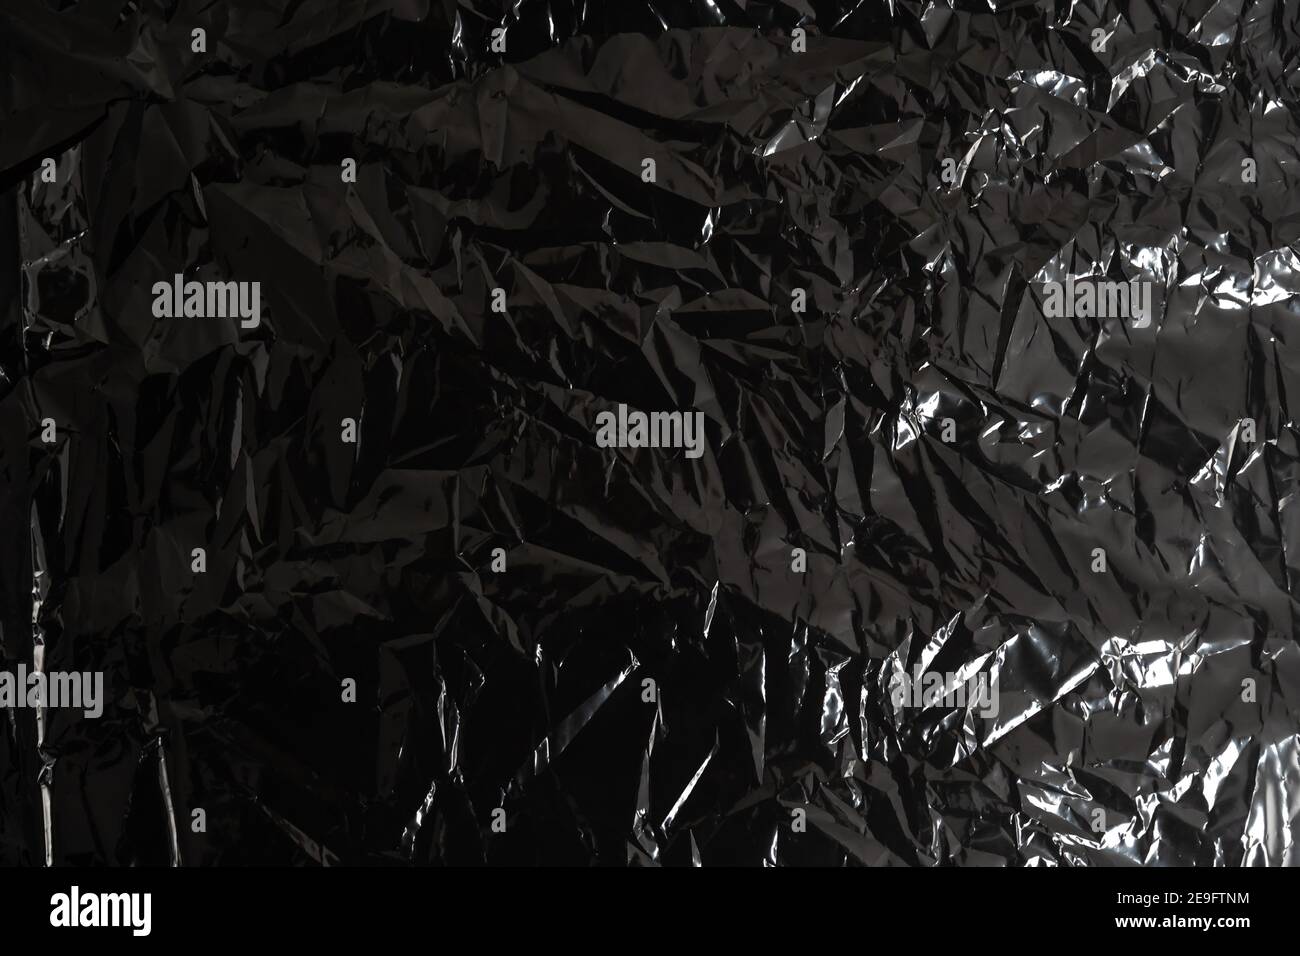 Echte transparente Plastikfolie auf schwarzem Hintergrund. Einwegfolie für  Overlay und Komposition im Design. Dünne Polymerfolienschicht aus der  Verpackung Stockfotografie - Alamy